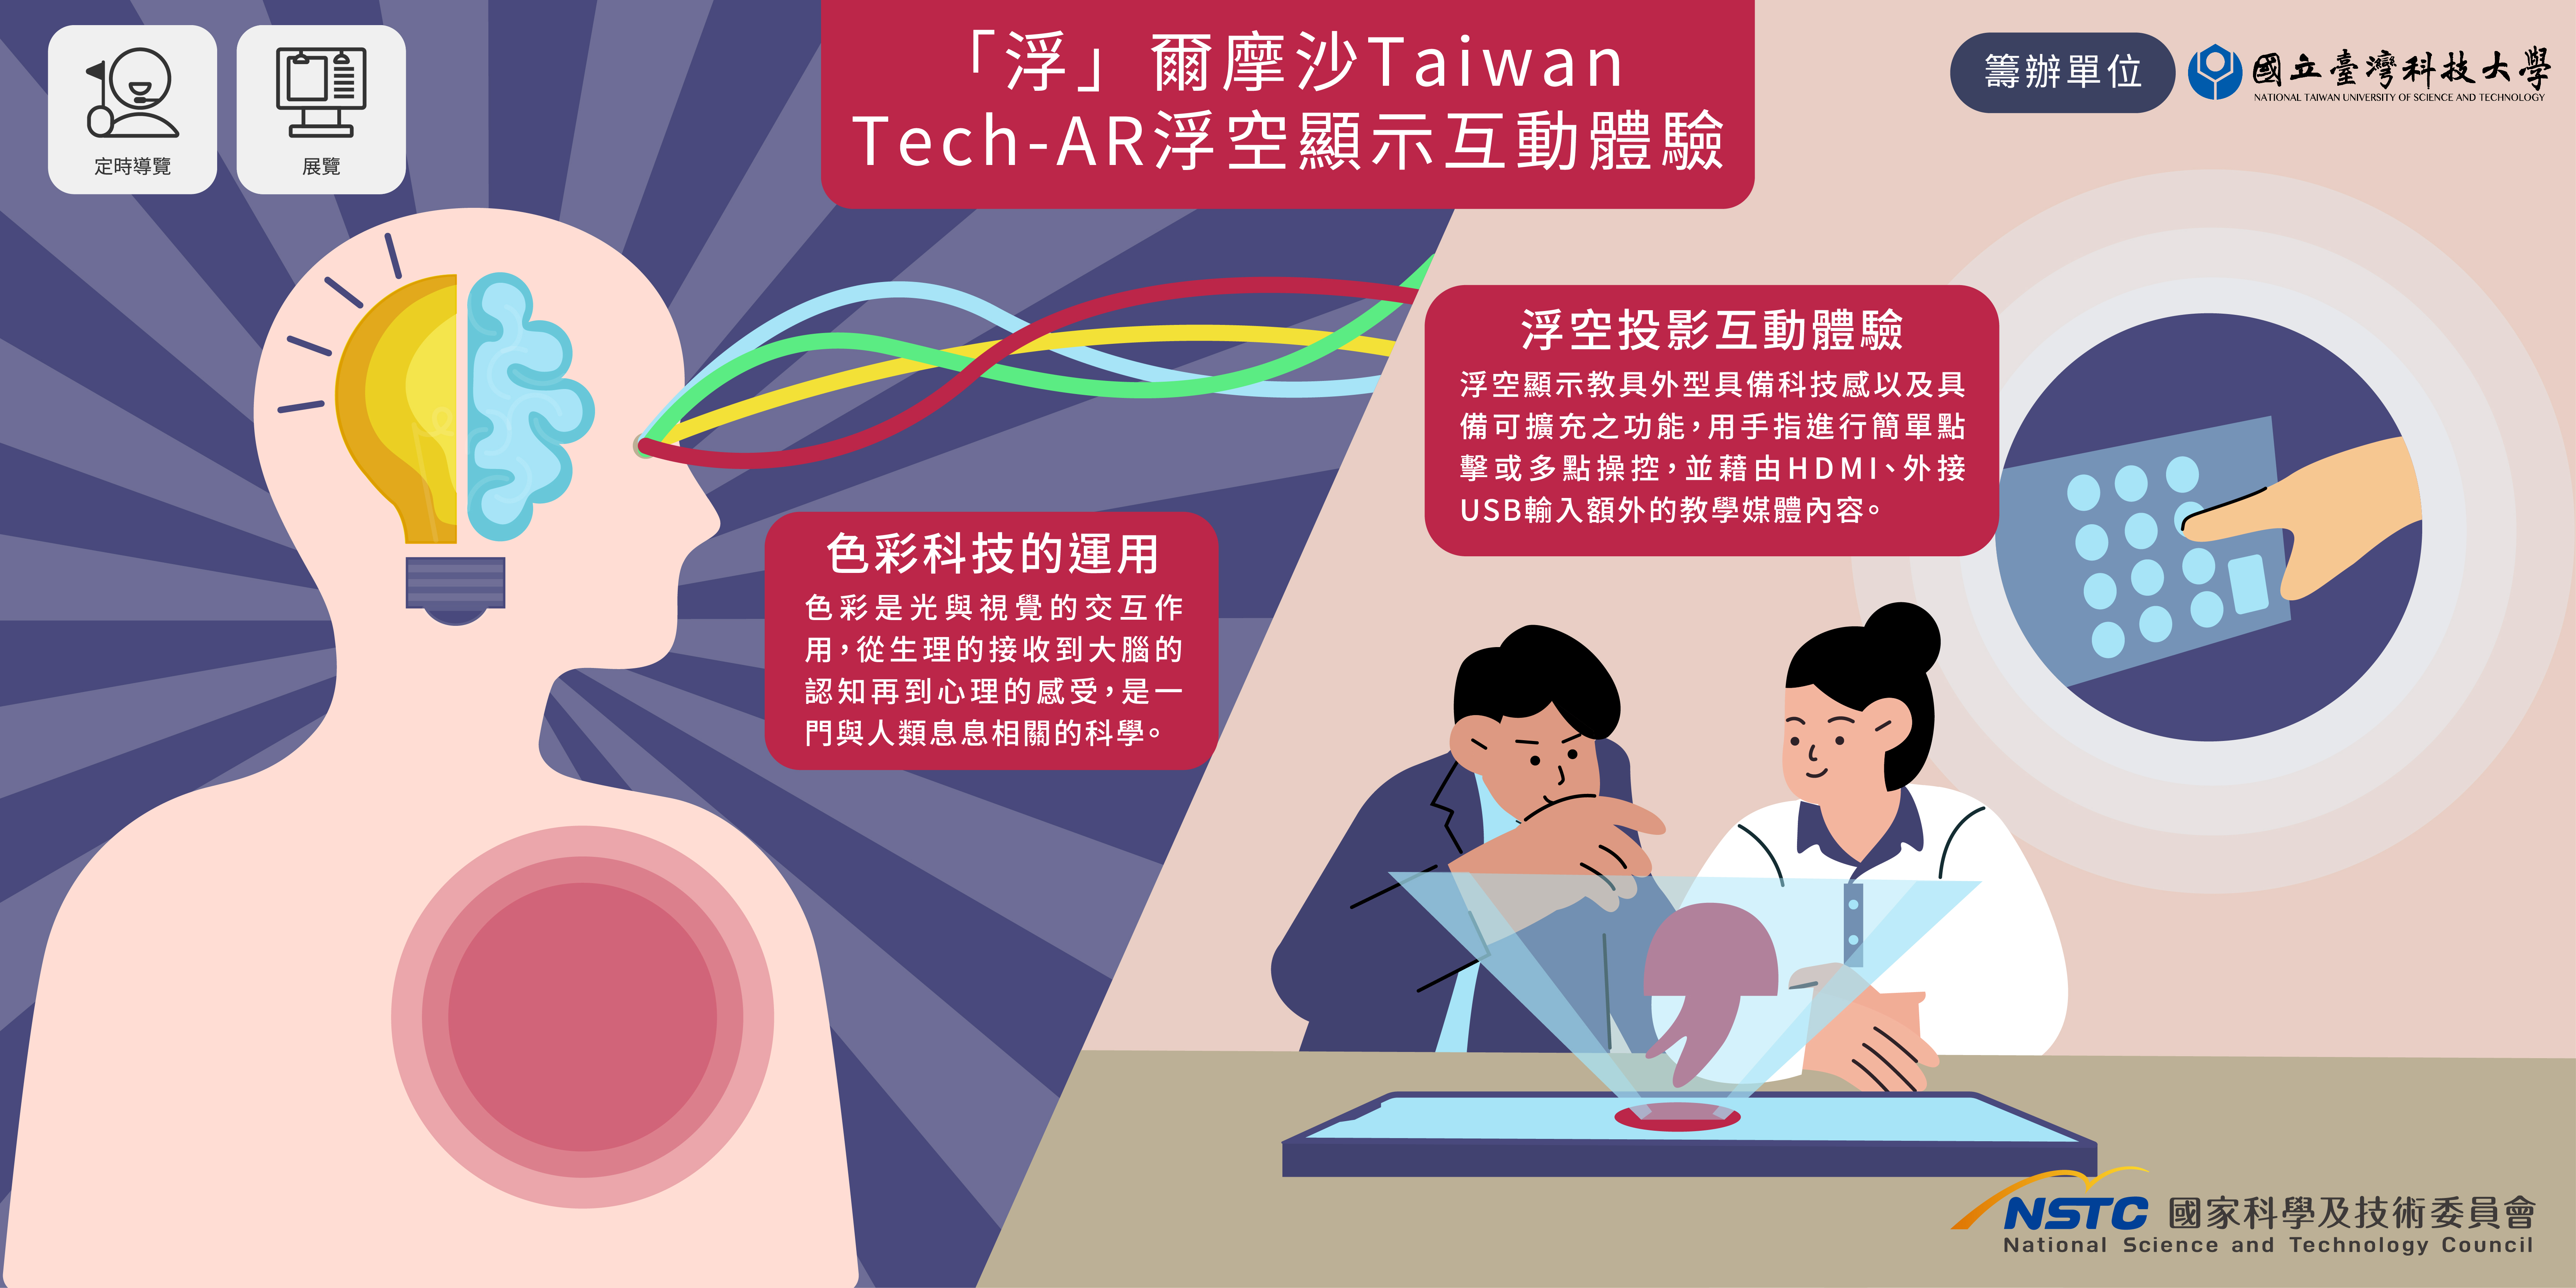  「浮」爾摩沙Taiwan Tech-AR浮空顯示互動體驗